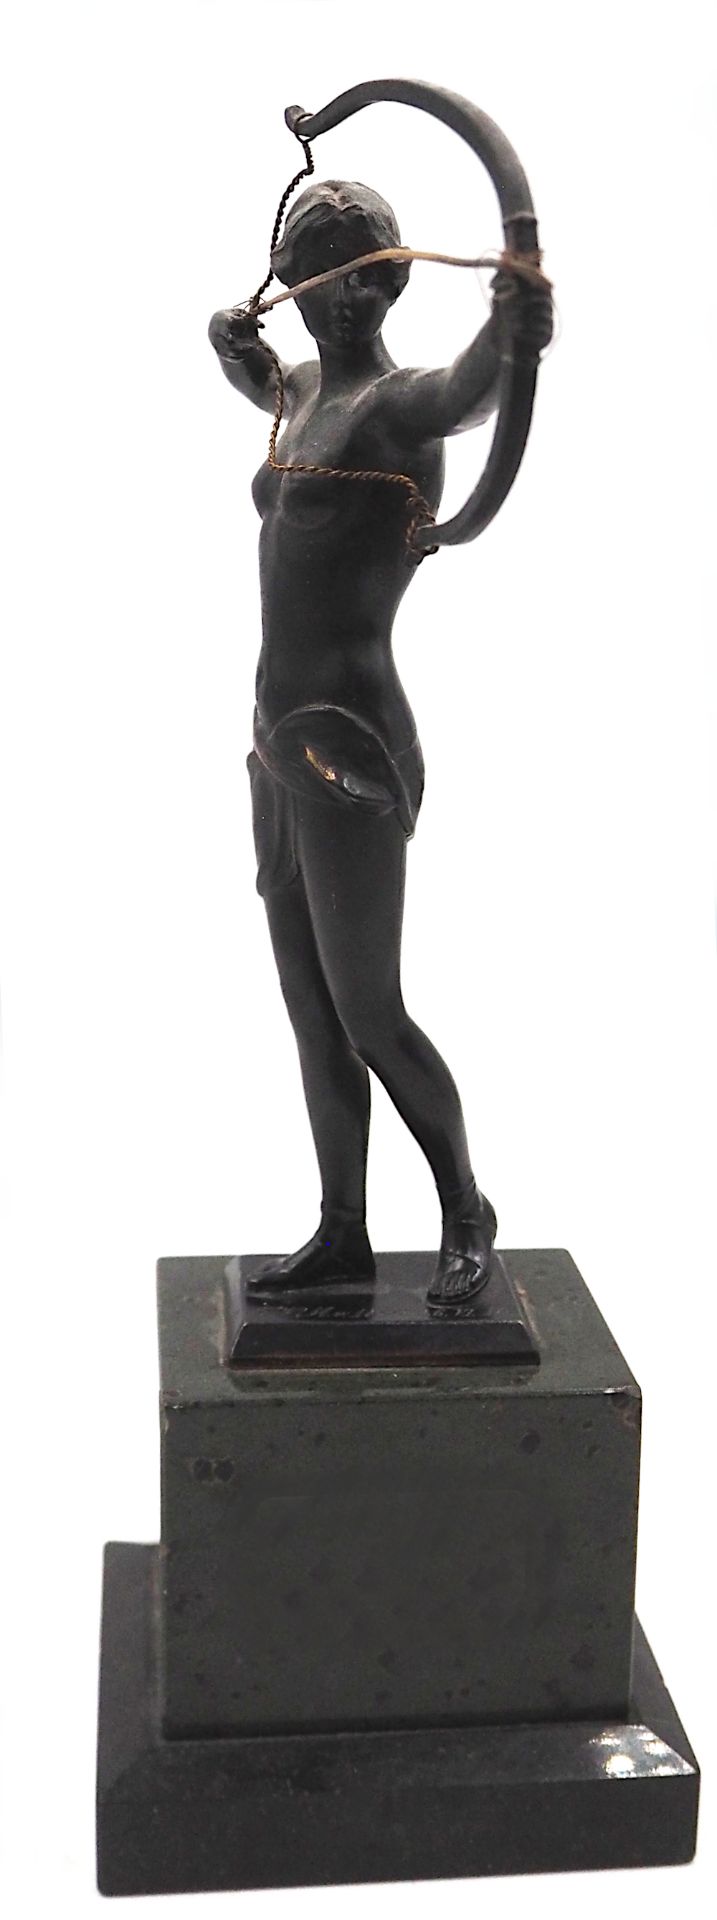 1 Bronzefigur/Siegerpreis "Bogenspannende Artemis" bez. "T.V.M. v. 1860" (wohl Turnver